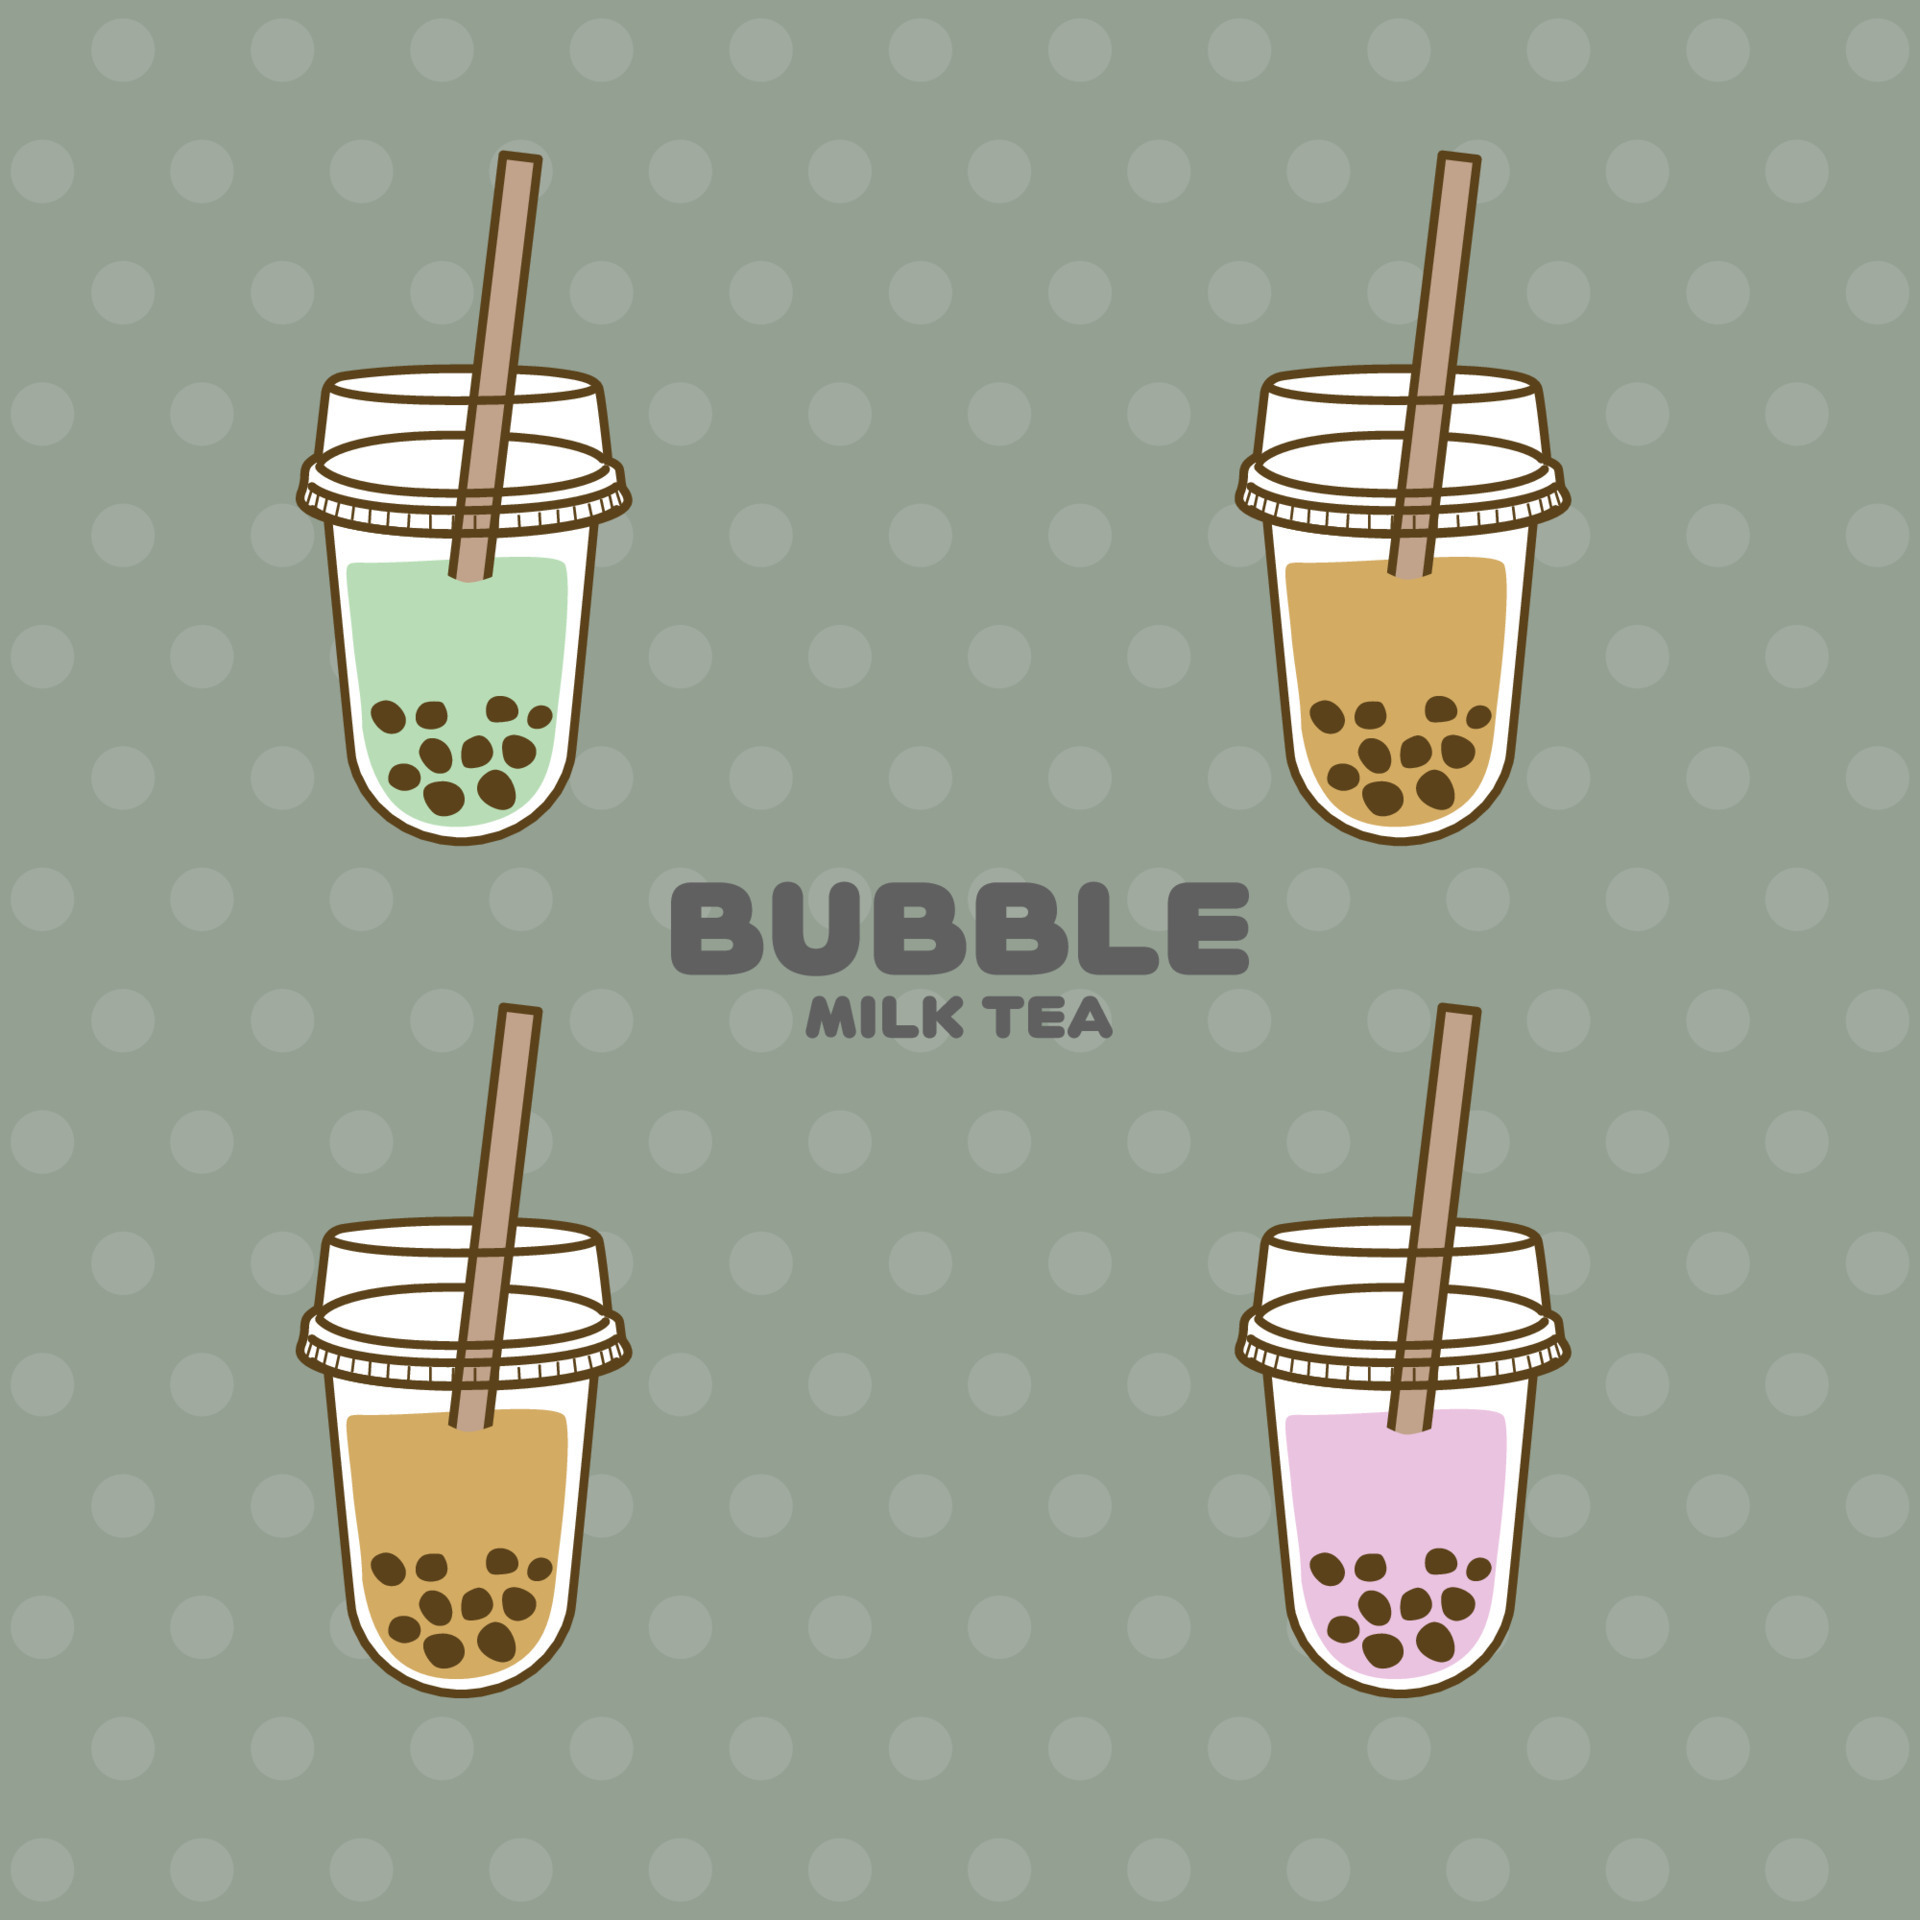 Không gian Bubble Milk Tea nay đẹp đến mức nào? Hãy cùng chiêm ngưỡng hình nền Vector Bubble Milk Tea đầy ấn tượng này, với nhiều chất liệu và màu sắc độc đáo. Chắc chắn bạn sẽ bị thu hút ngay từ cái nhìn đầu tiên!